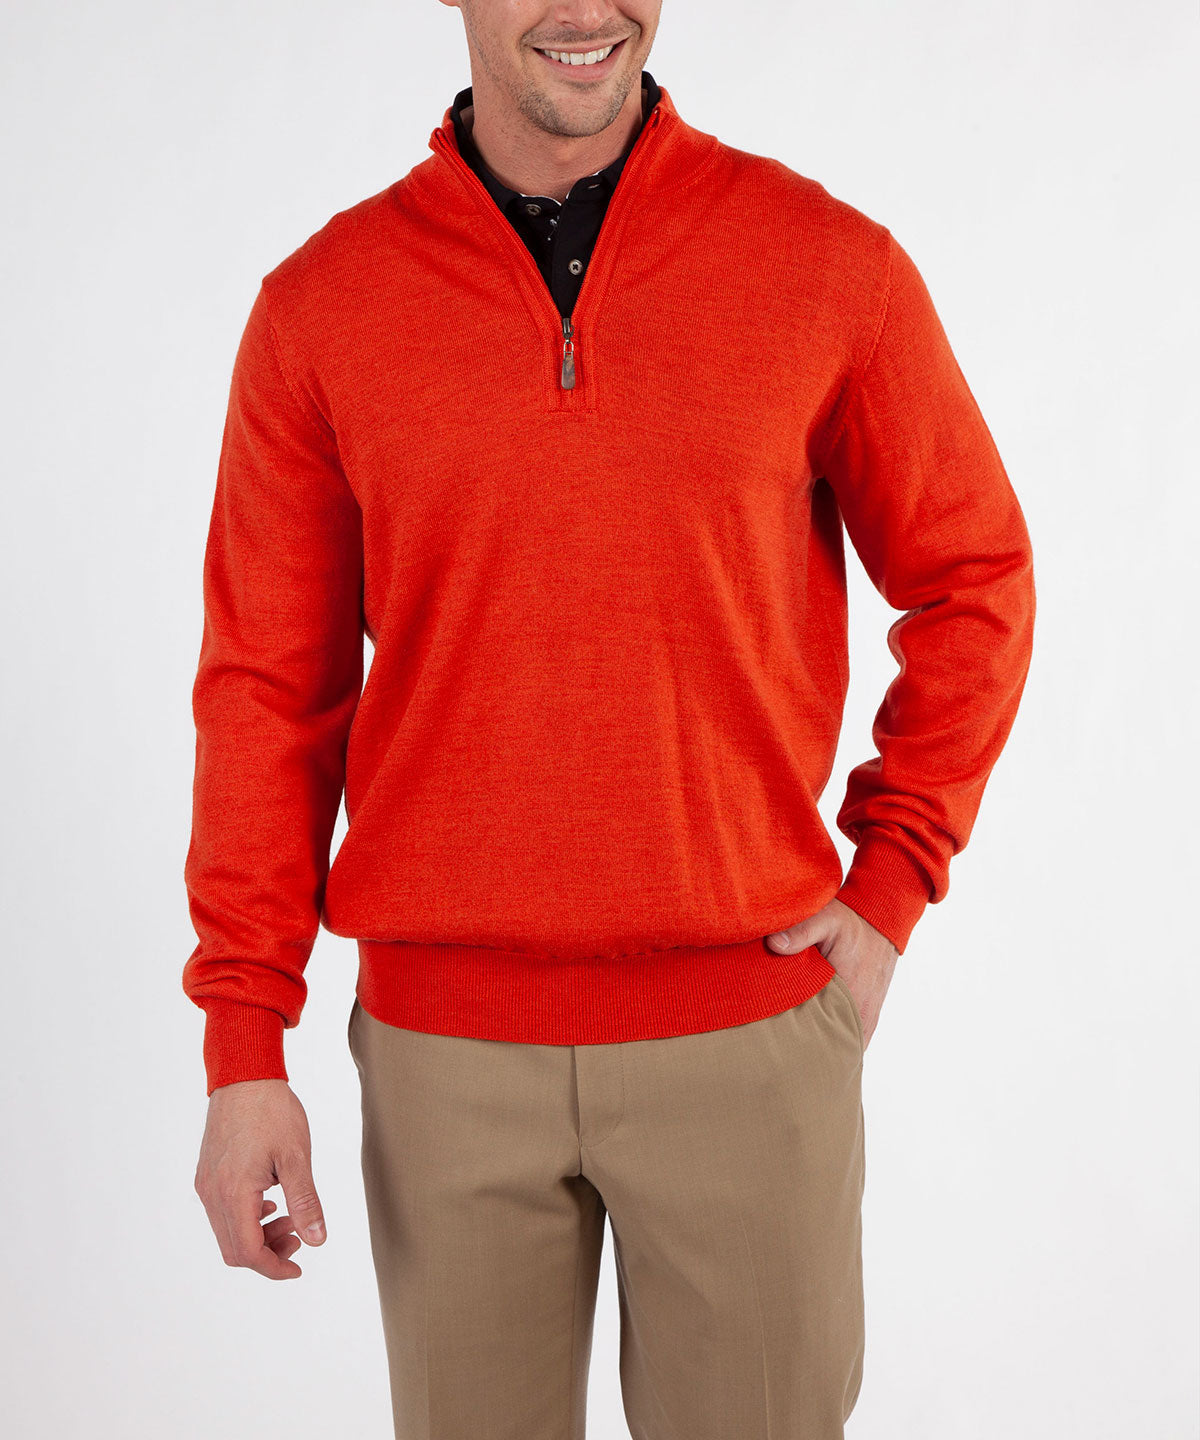 Signature 100% Merino Wool Quarter-Zip Sweater